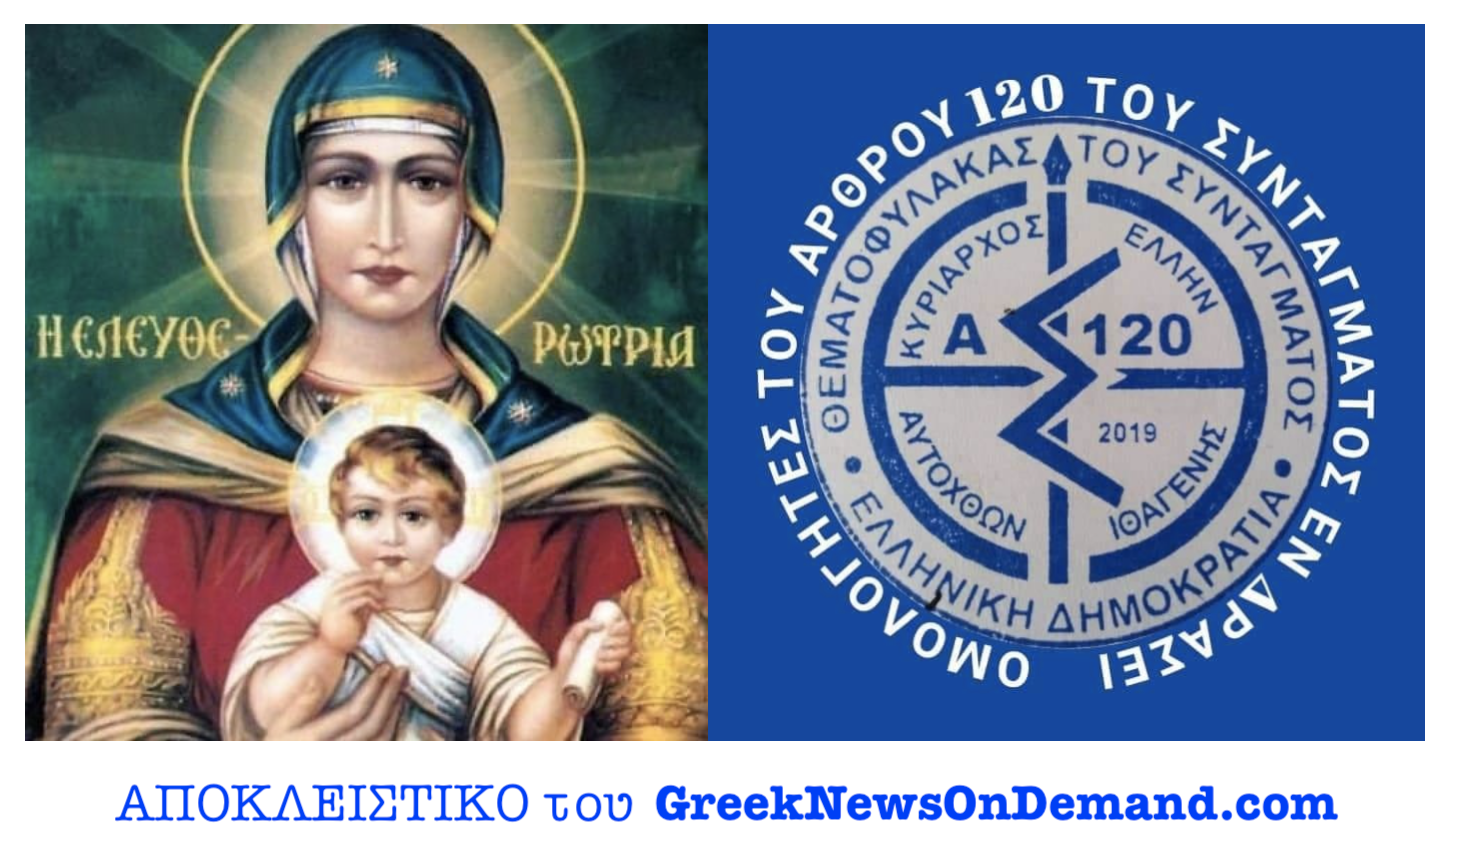 ΒΟΜΒΑ: Ενεργοποιήθη το Άρθρον 120 του Ελληνικού Συντάγματος! ΠΑΕΙ, ΤΕΛΕΙΩΣΕ το παράνομο πολιτικό κατεστημένο! Έφθασε η ΣΩΤΗΡΙΑ των Ορθοδόξων Ελλήνων!